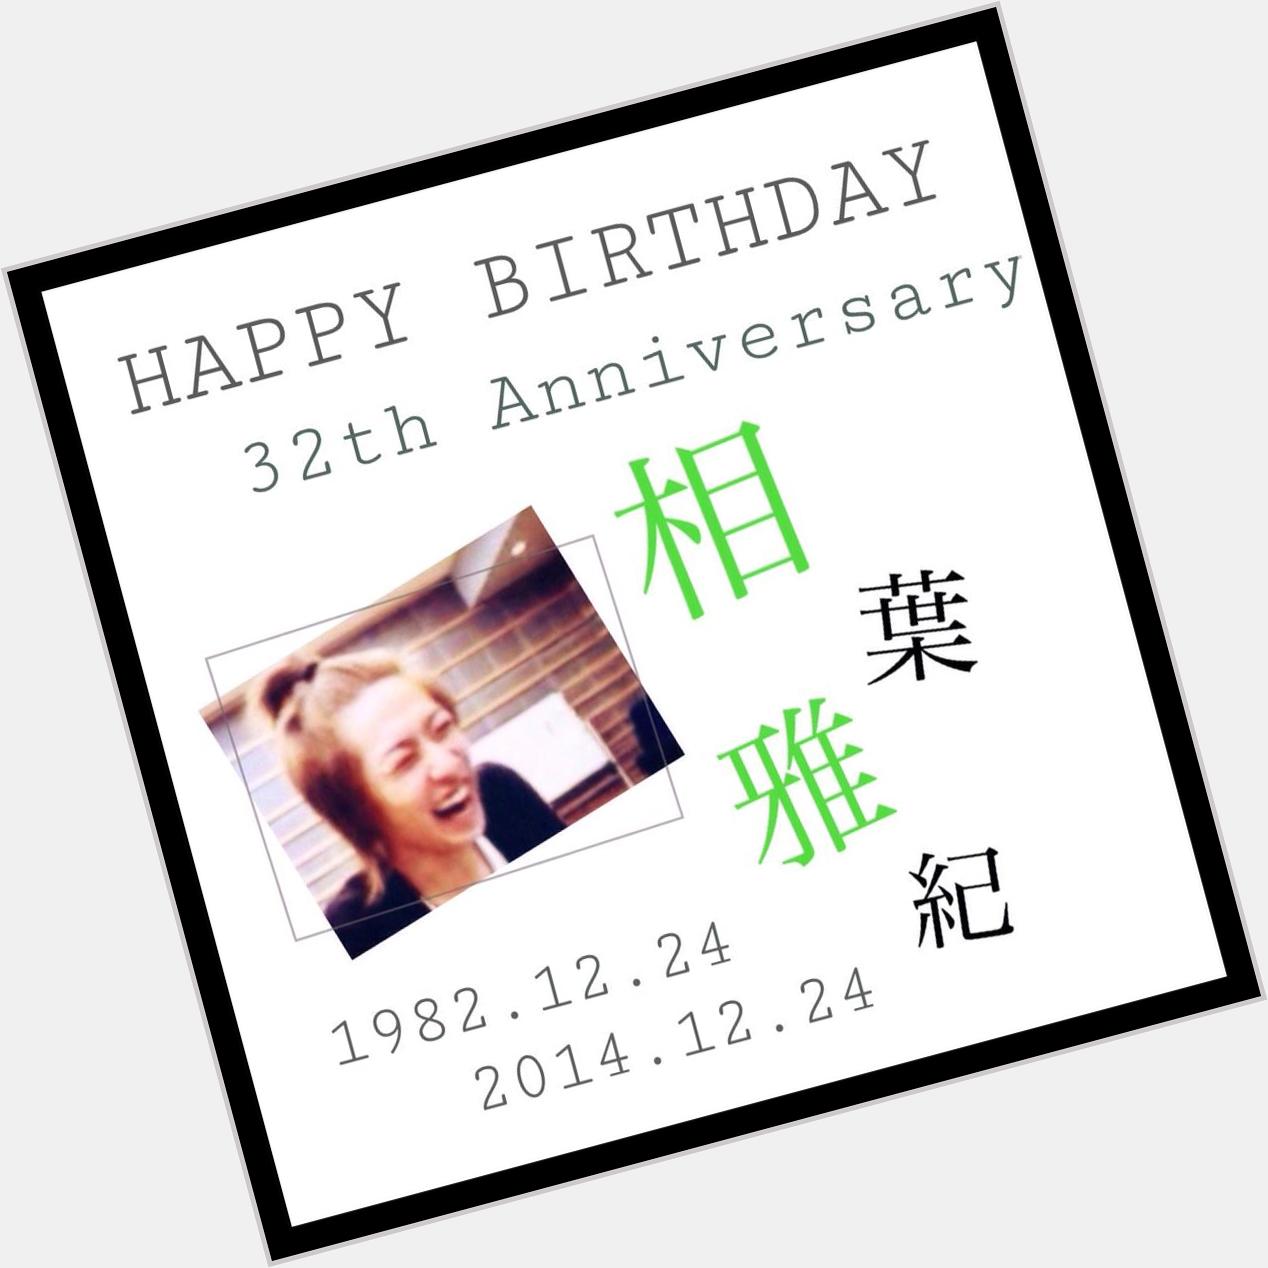 HAPPY BIRTHDAY
     To Masaki Aiba 

1982.12.24 2014.12.24

32th Anniversary                              